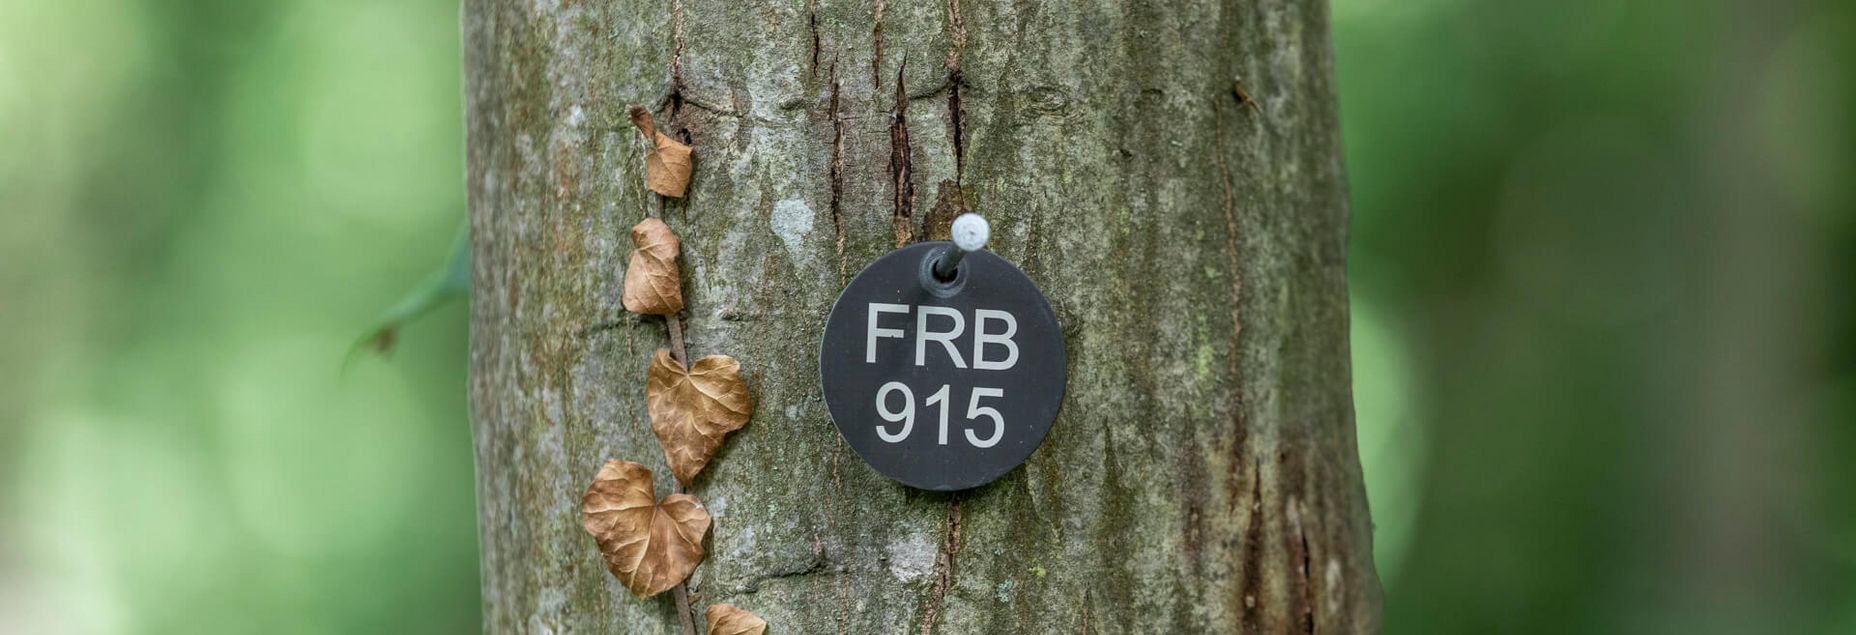 FRB 915 - Plakette